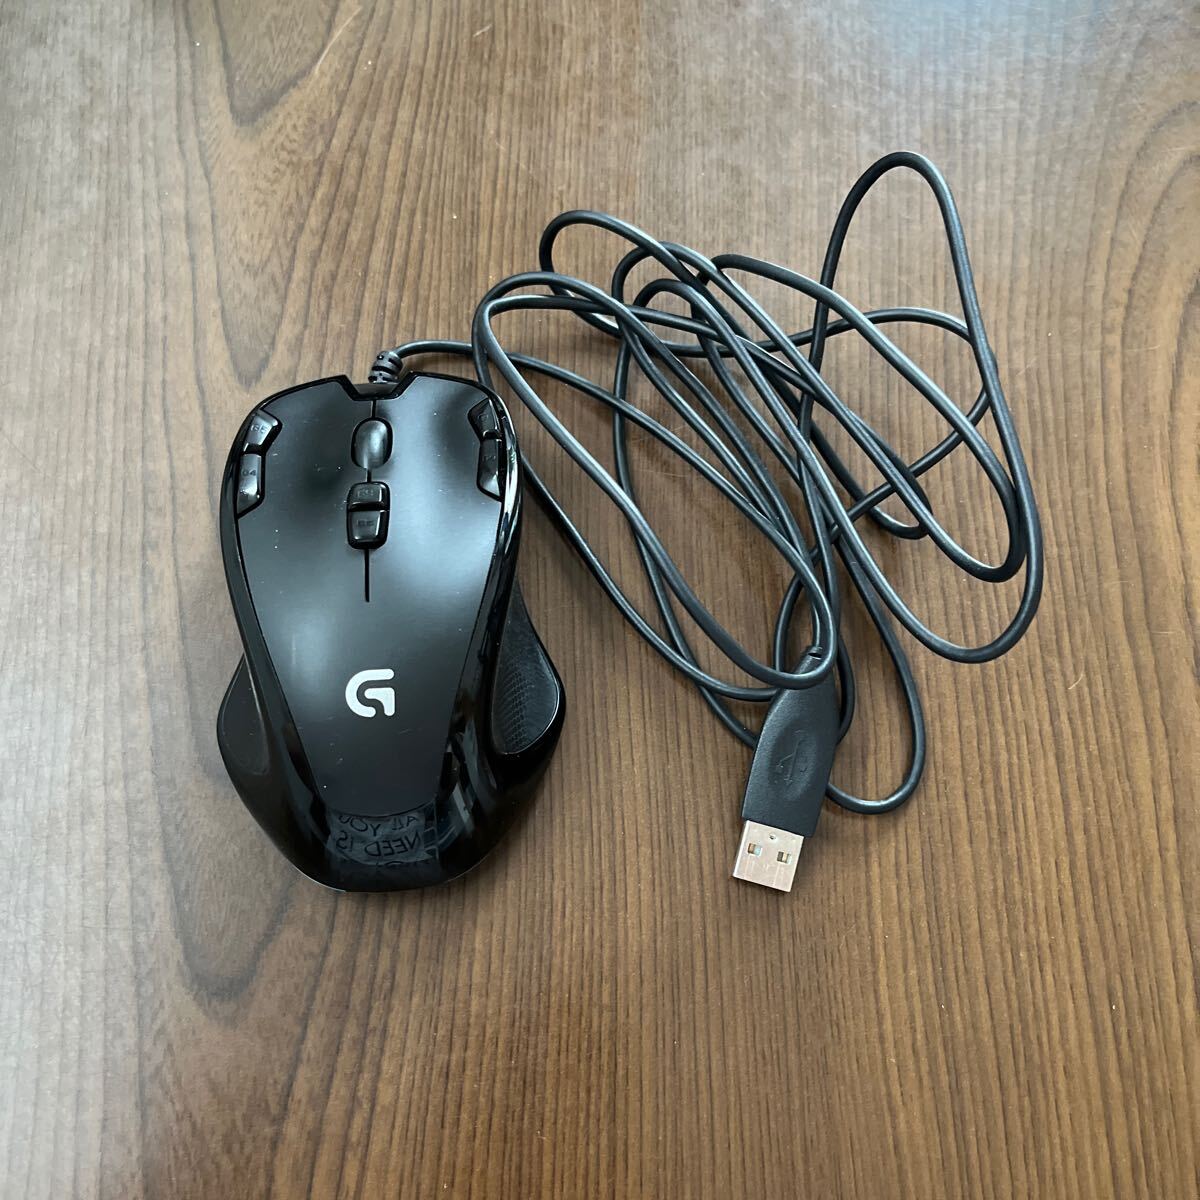 605p1324☆ USB ゲーミングマウス ブラック ロジクール G300s プログラム可能ボタン 左右対称